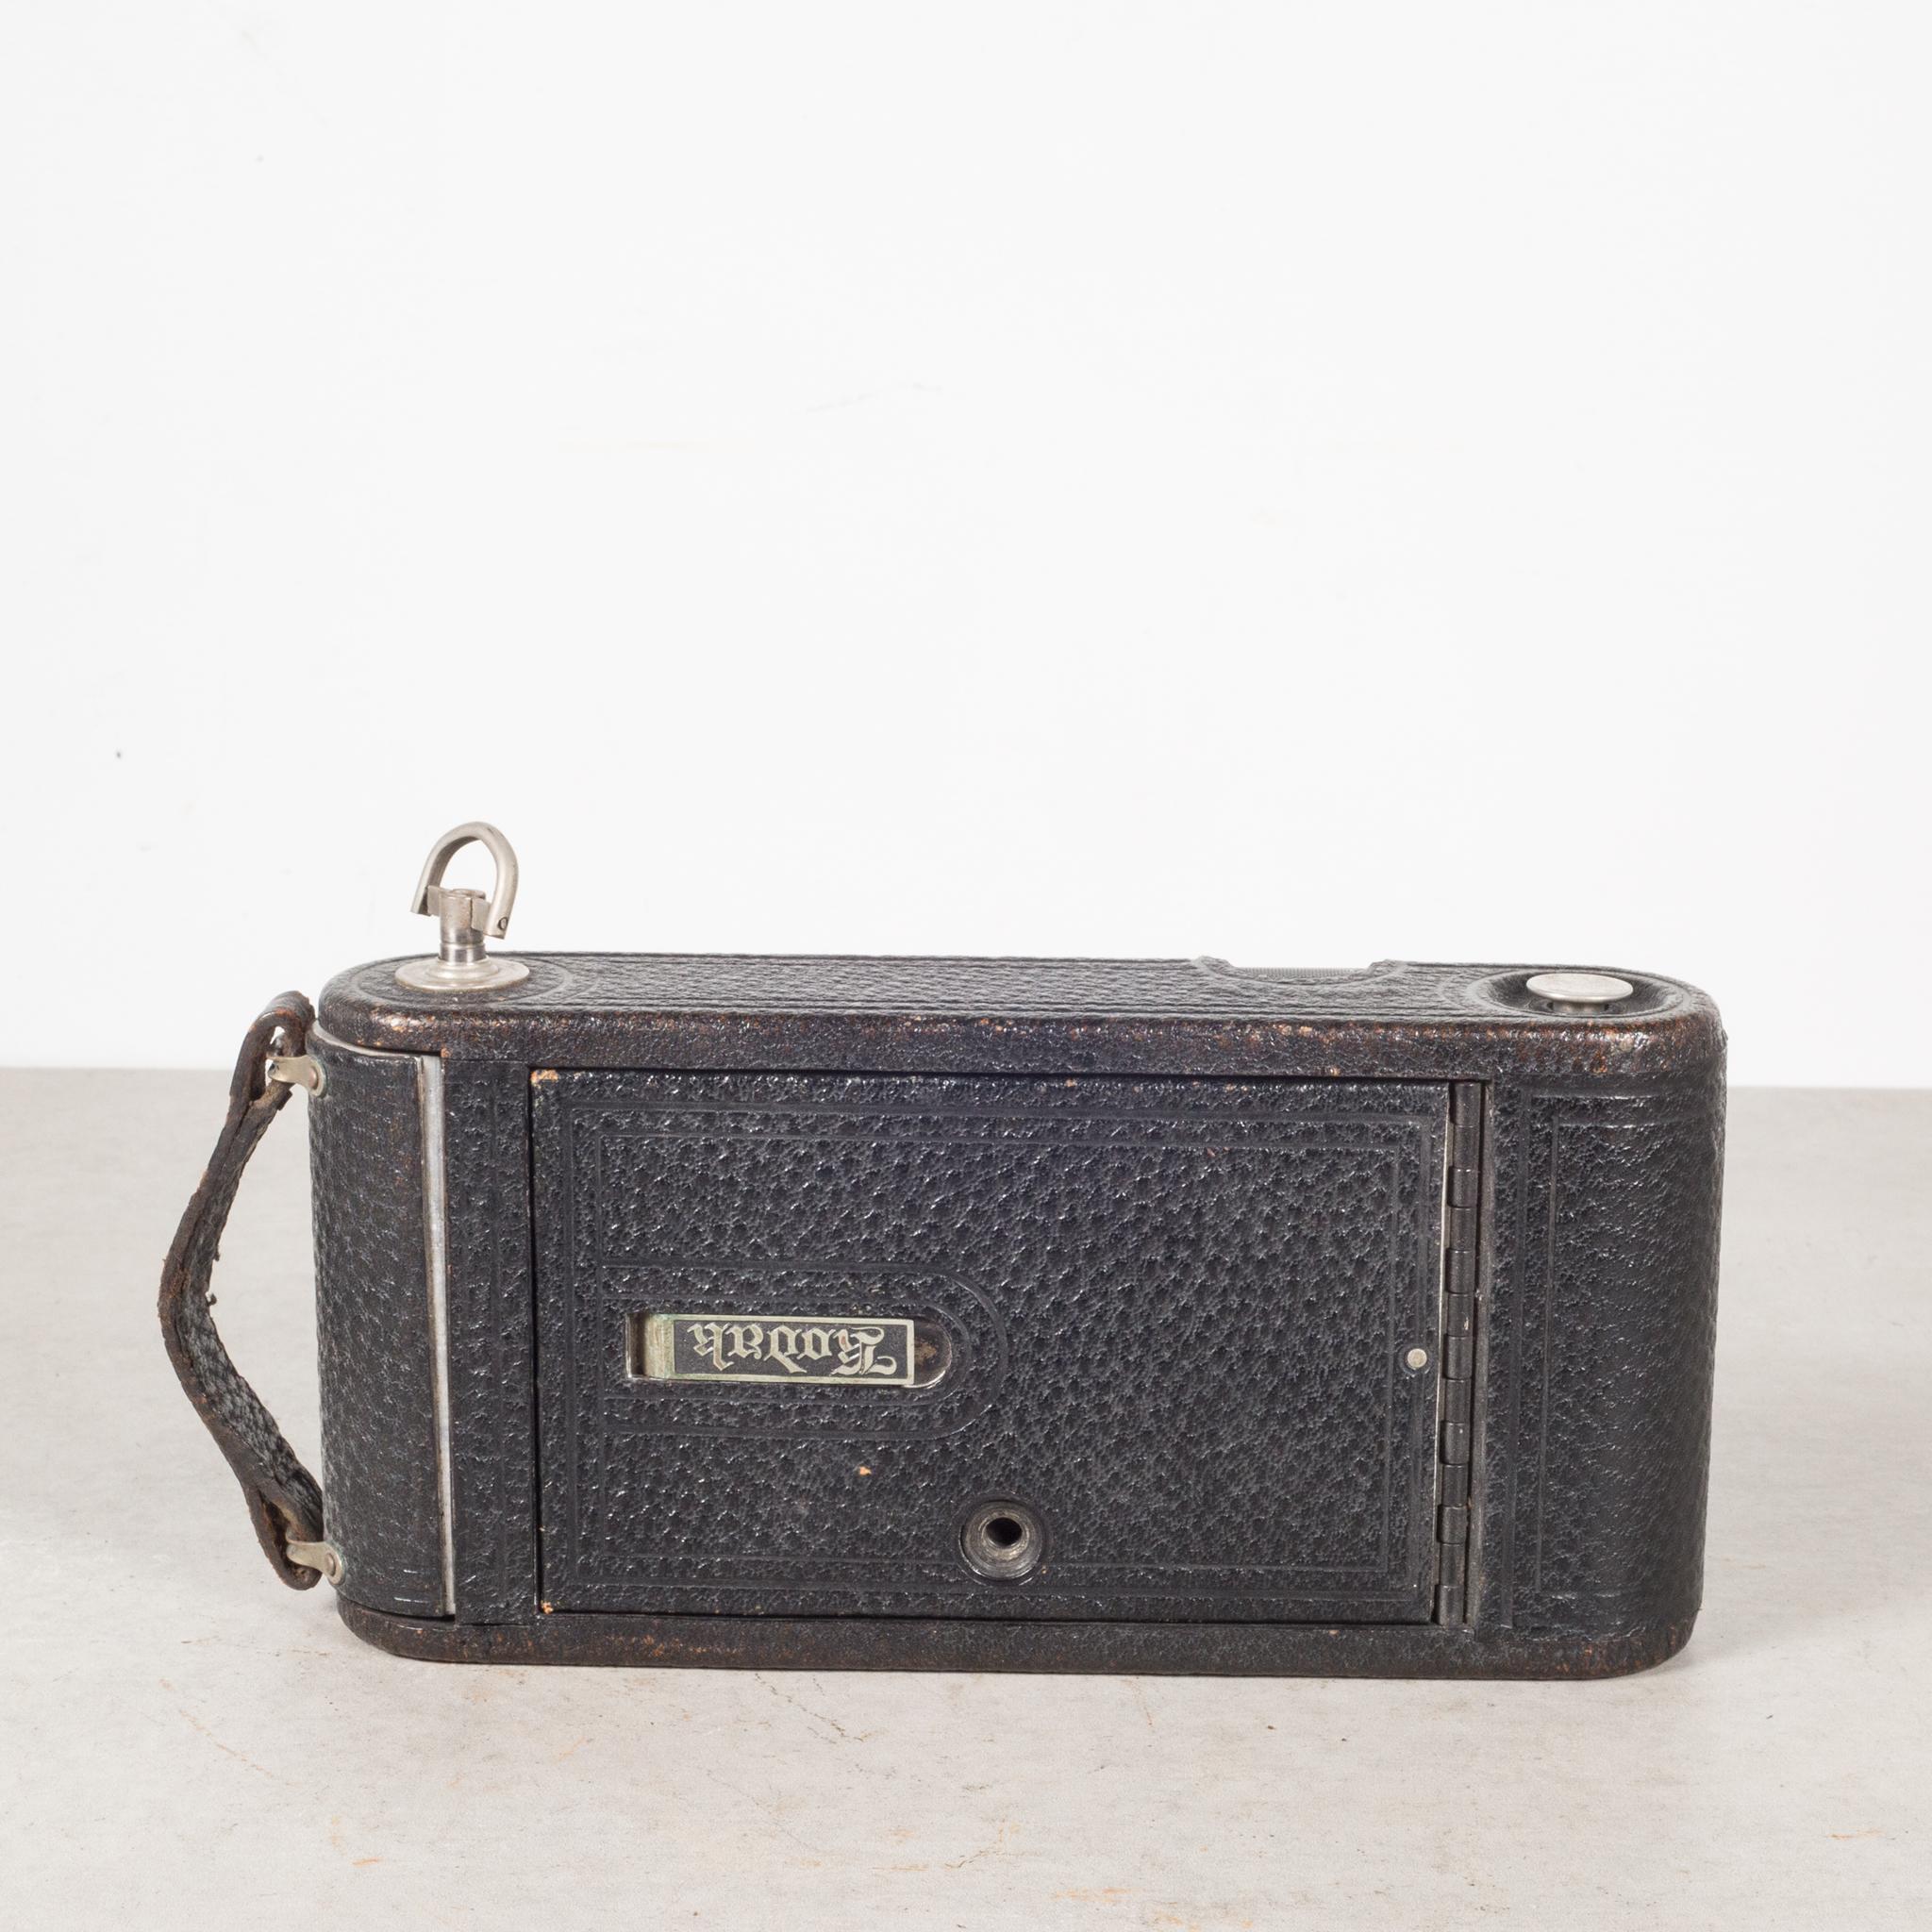 Industrial Antique Eastman Kodak 